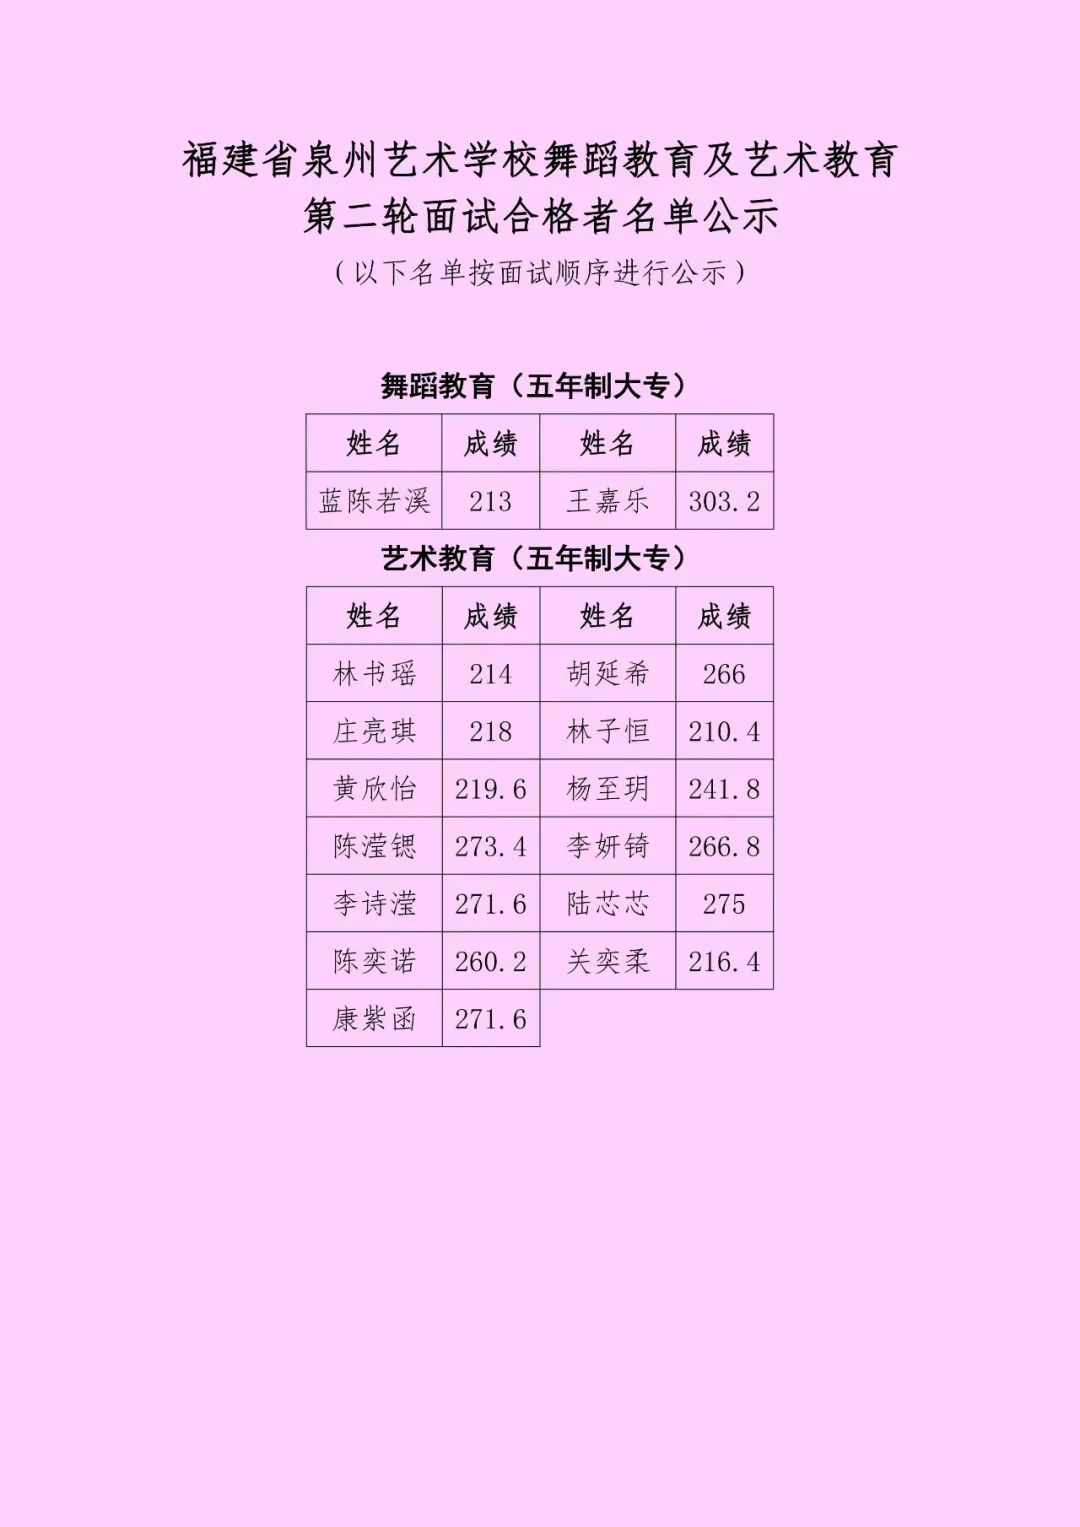 福建省泉州艺术学校舞蹈教育及艺术教育第二轮面试合格者名单公示